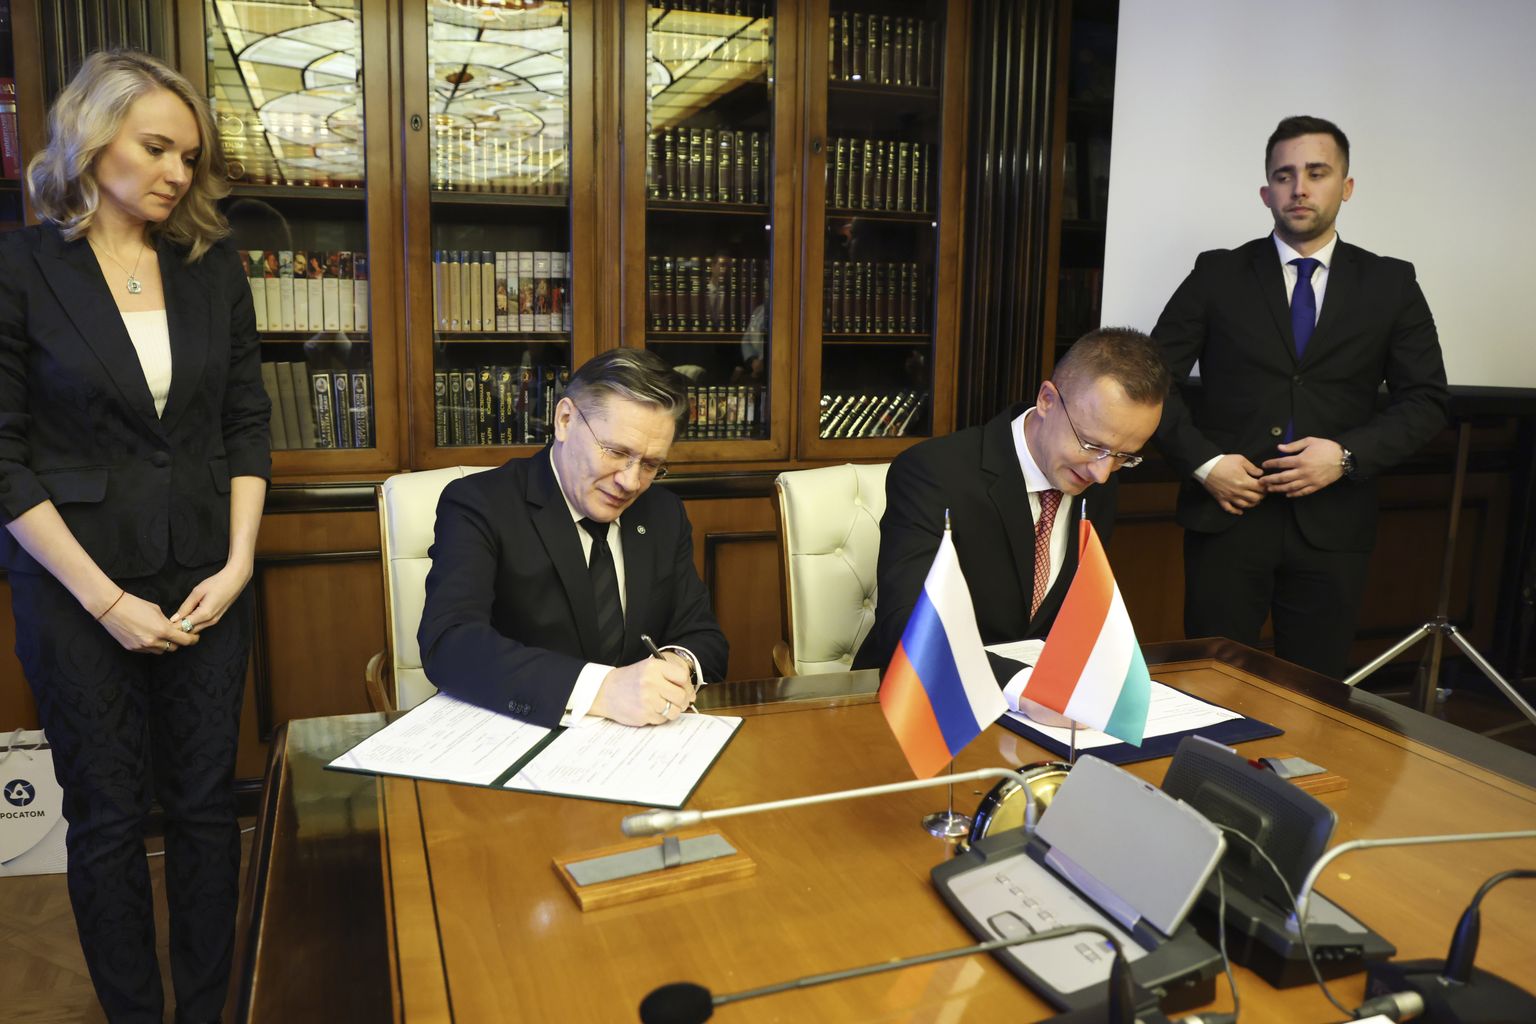 Venemaa riikliku energiakorporatsiooni Rosatom peadirektor Aleksei Likatšev ja Ungari välis- ja kaubandusminister Peter Szijjarto allkirjastamas dokumenti oma kohtumisel Moskvas 11. aprillil 2023. aastal.